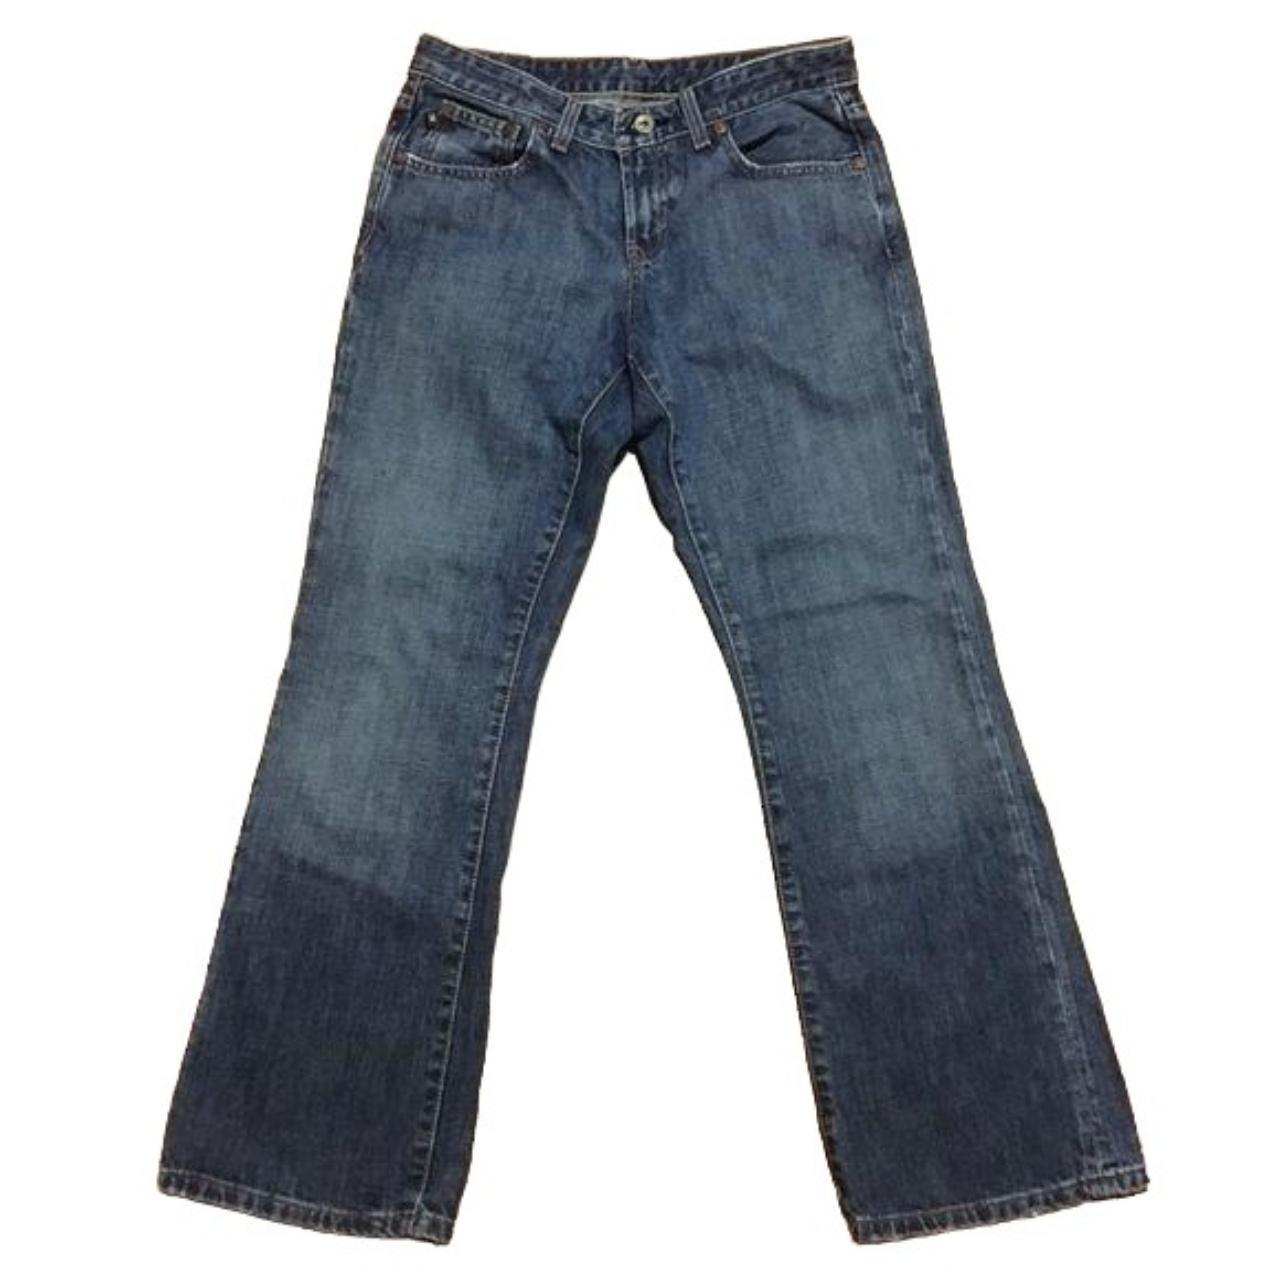 Polo Ralph Lauren Modern Bootcut Jeans Sz 6x30. !00%... - Depop